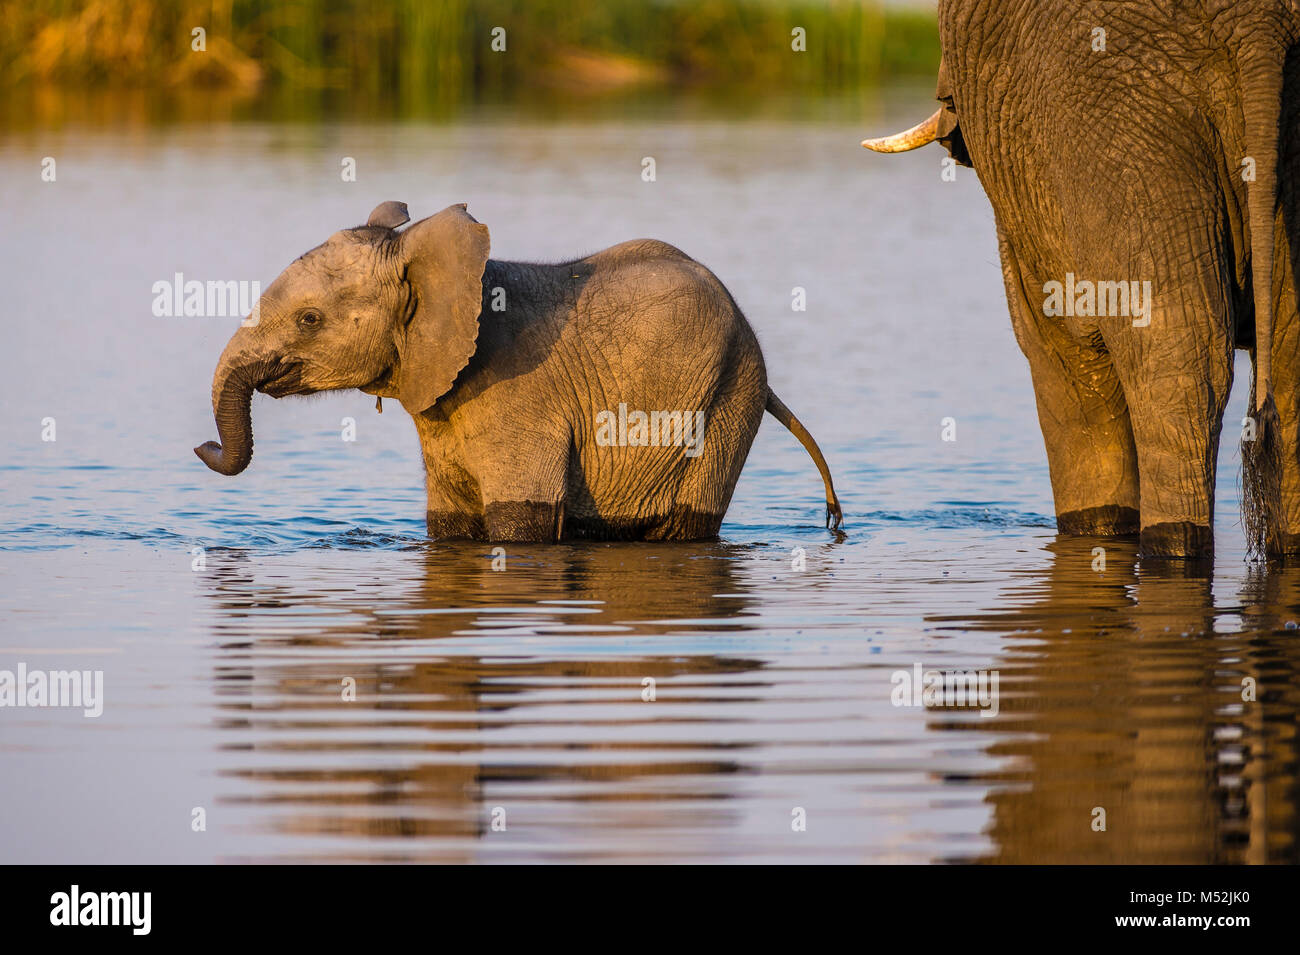 Un Elefante joven ternero disfruta jugando en un abrevadero mientras su madre junto con bebidas. Foto de stock